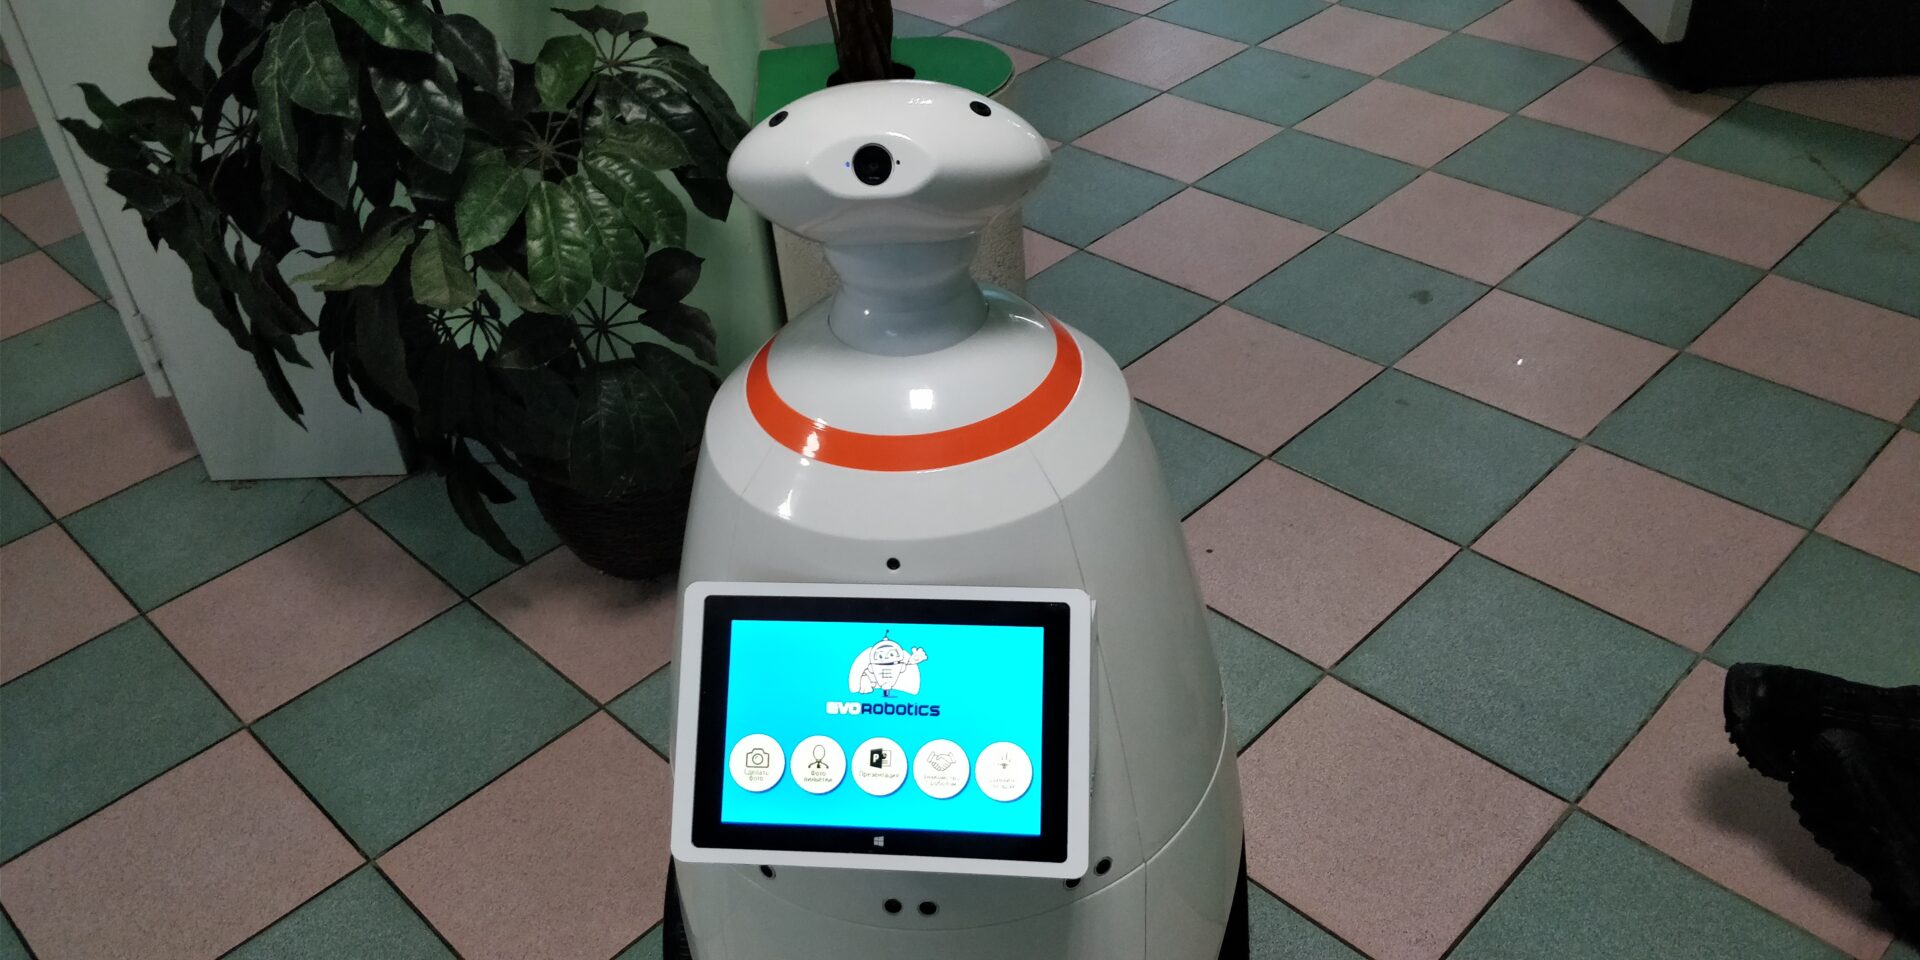 Робот R.Bot 100 Plus для выставочной компании «Эво Роботикс» г. Челябинск. Аренда промо робота – новое слово в маркетинге